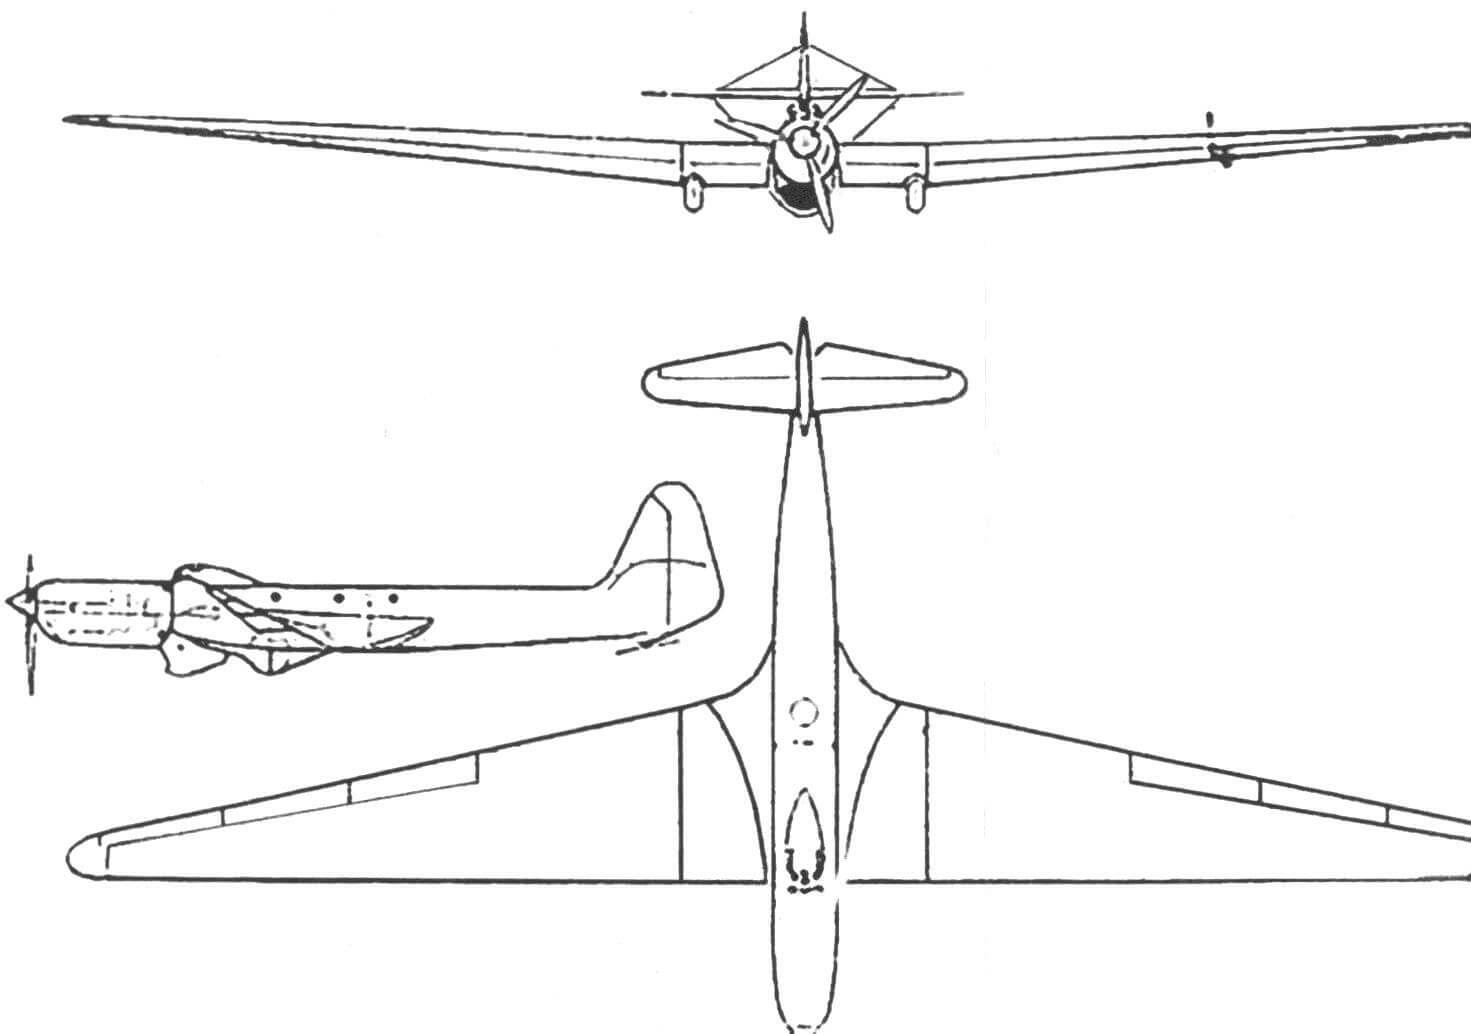 Чертеж общего вида самолета БОК-15 из эскизного проекта 1937 года